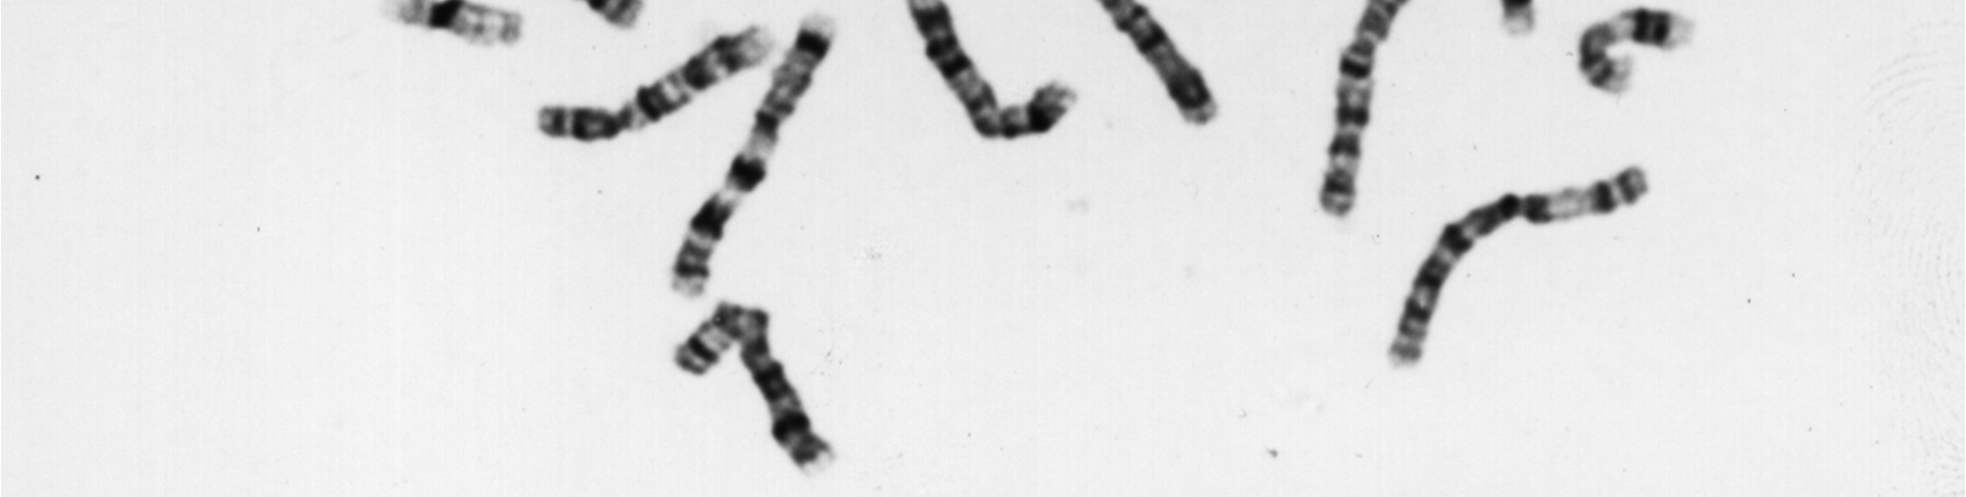 org/nobel_prizes/medicine/l aureates/1962/ (sito ufficiale dei premi Nobel) Un fondamentale contributo alla scoperta della struttura del DNA è stato dato dalla fisica inglese Rosalind Franklin che